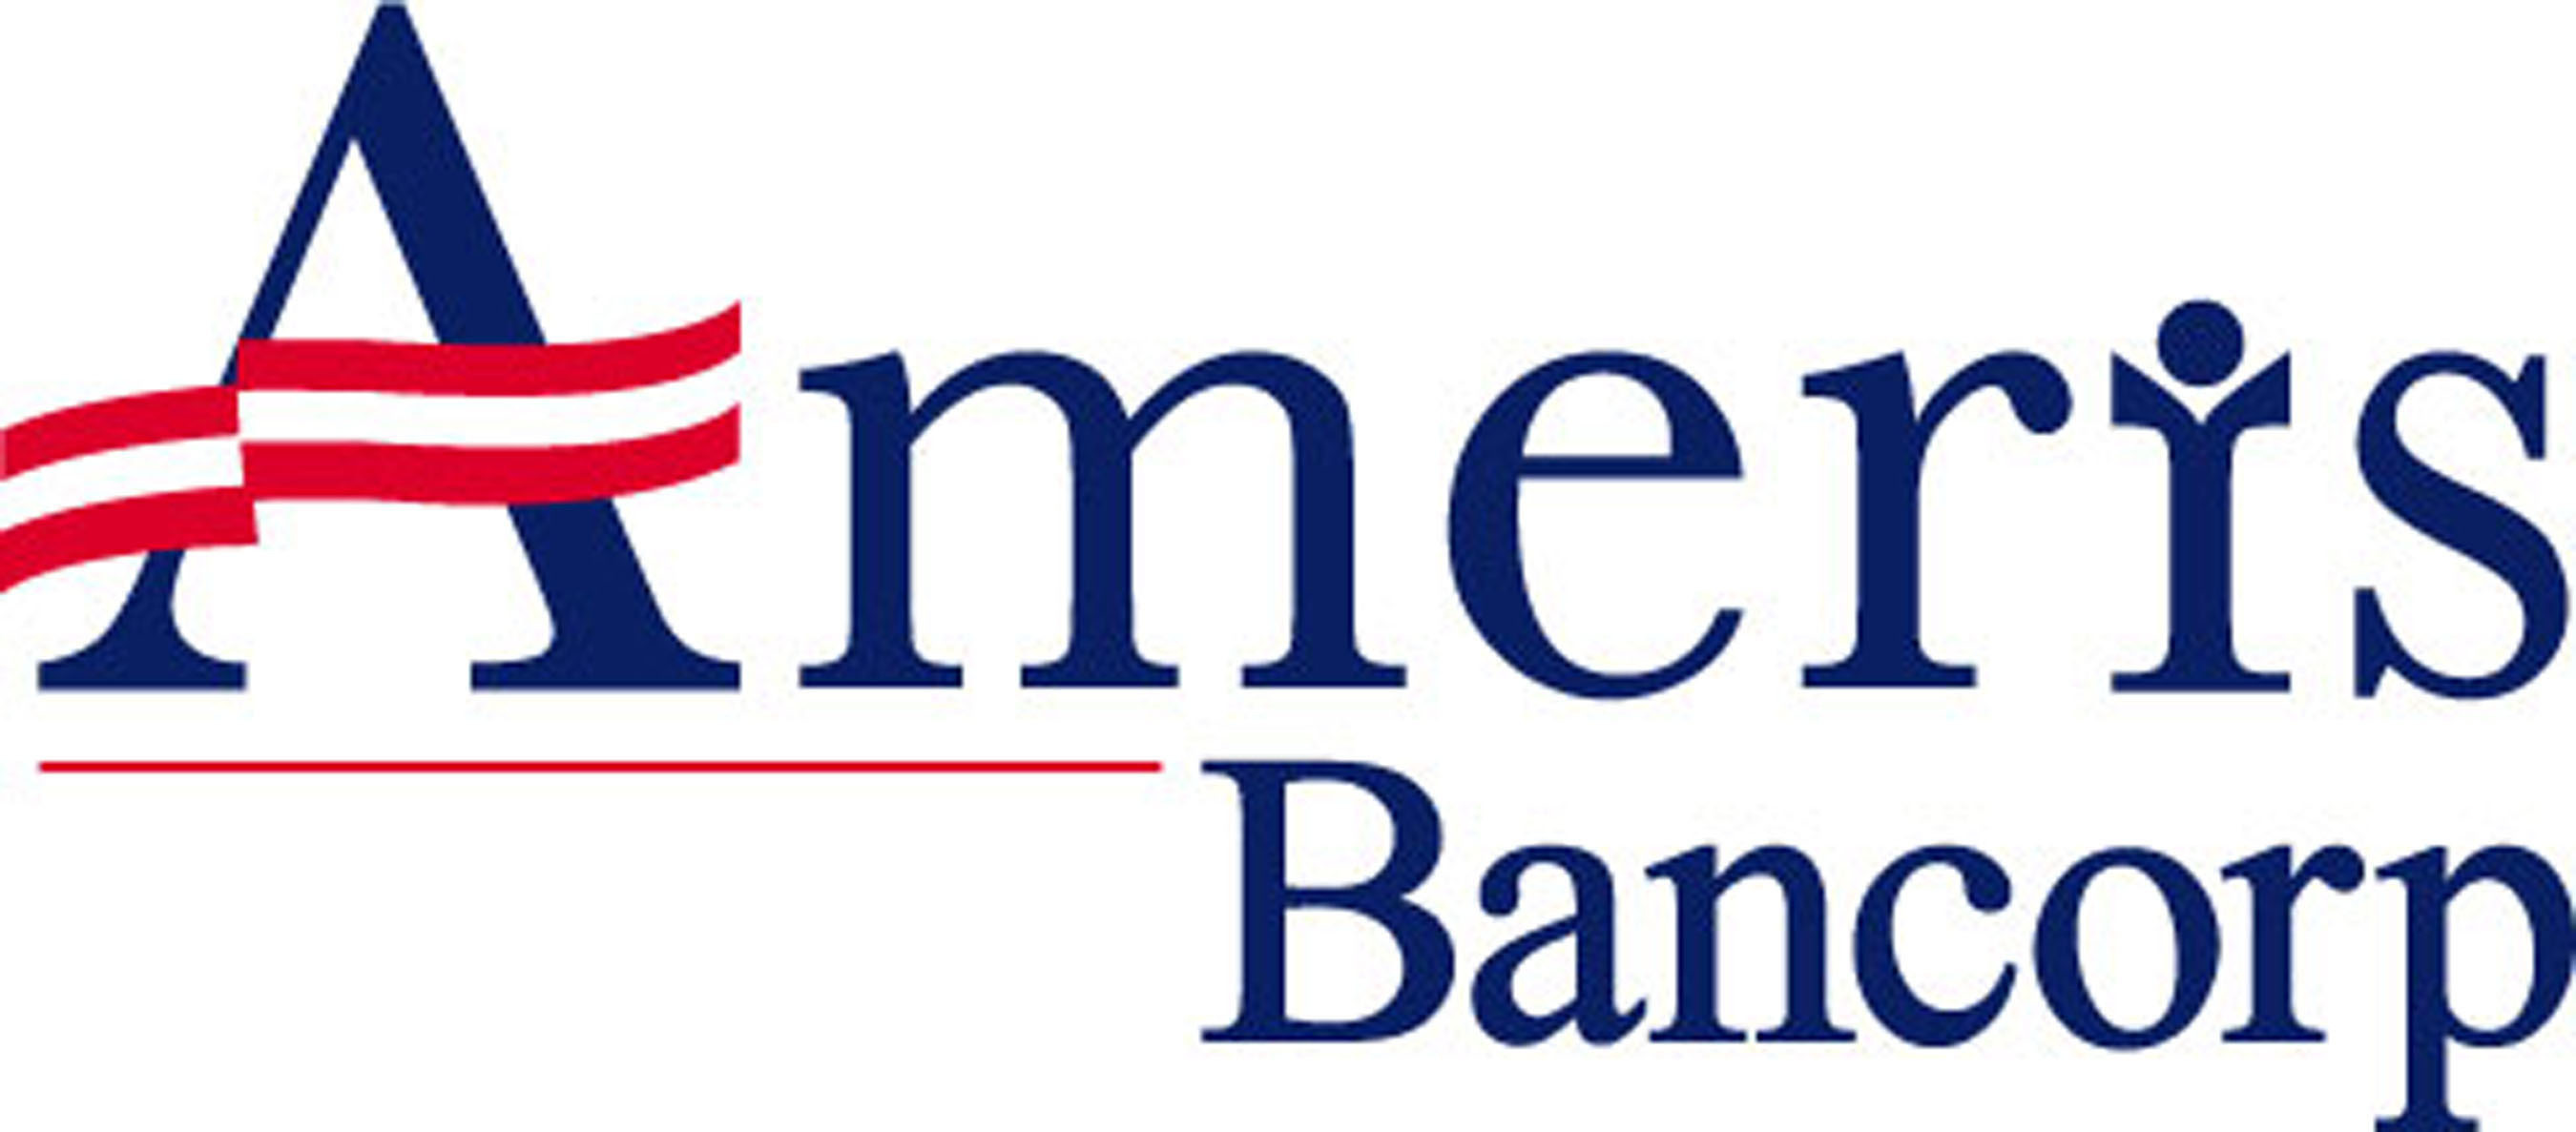 Ameris Bancorp logo. (PRNewsFoto/Ameris Bancorp) (PRNewsFoto/)